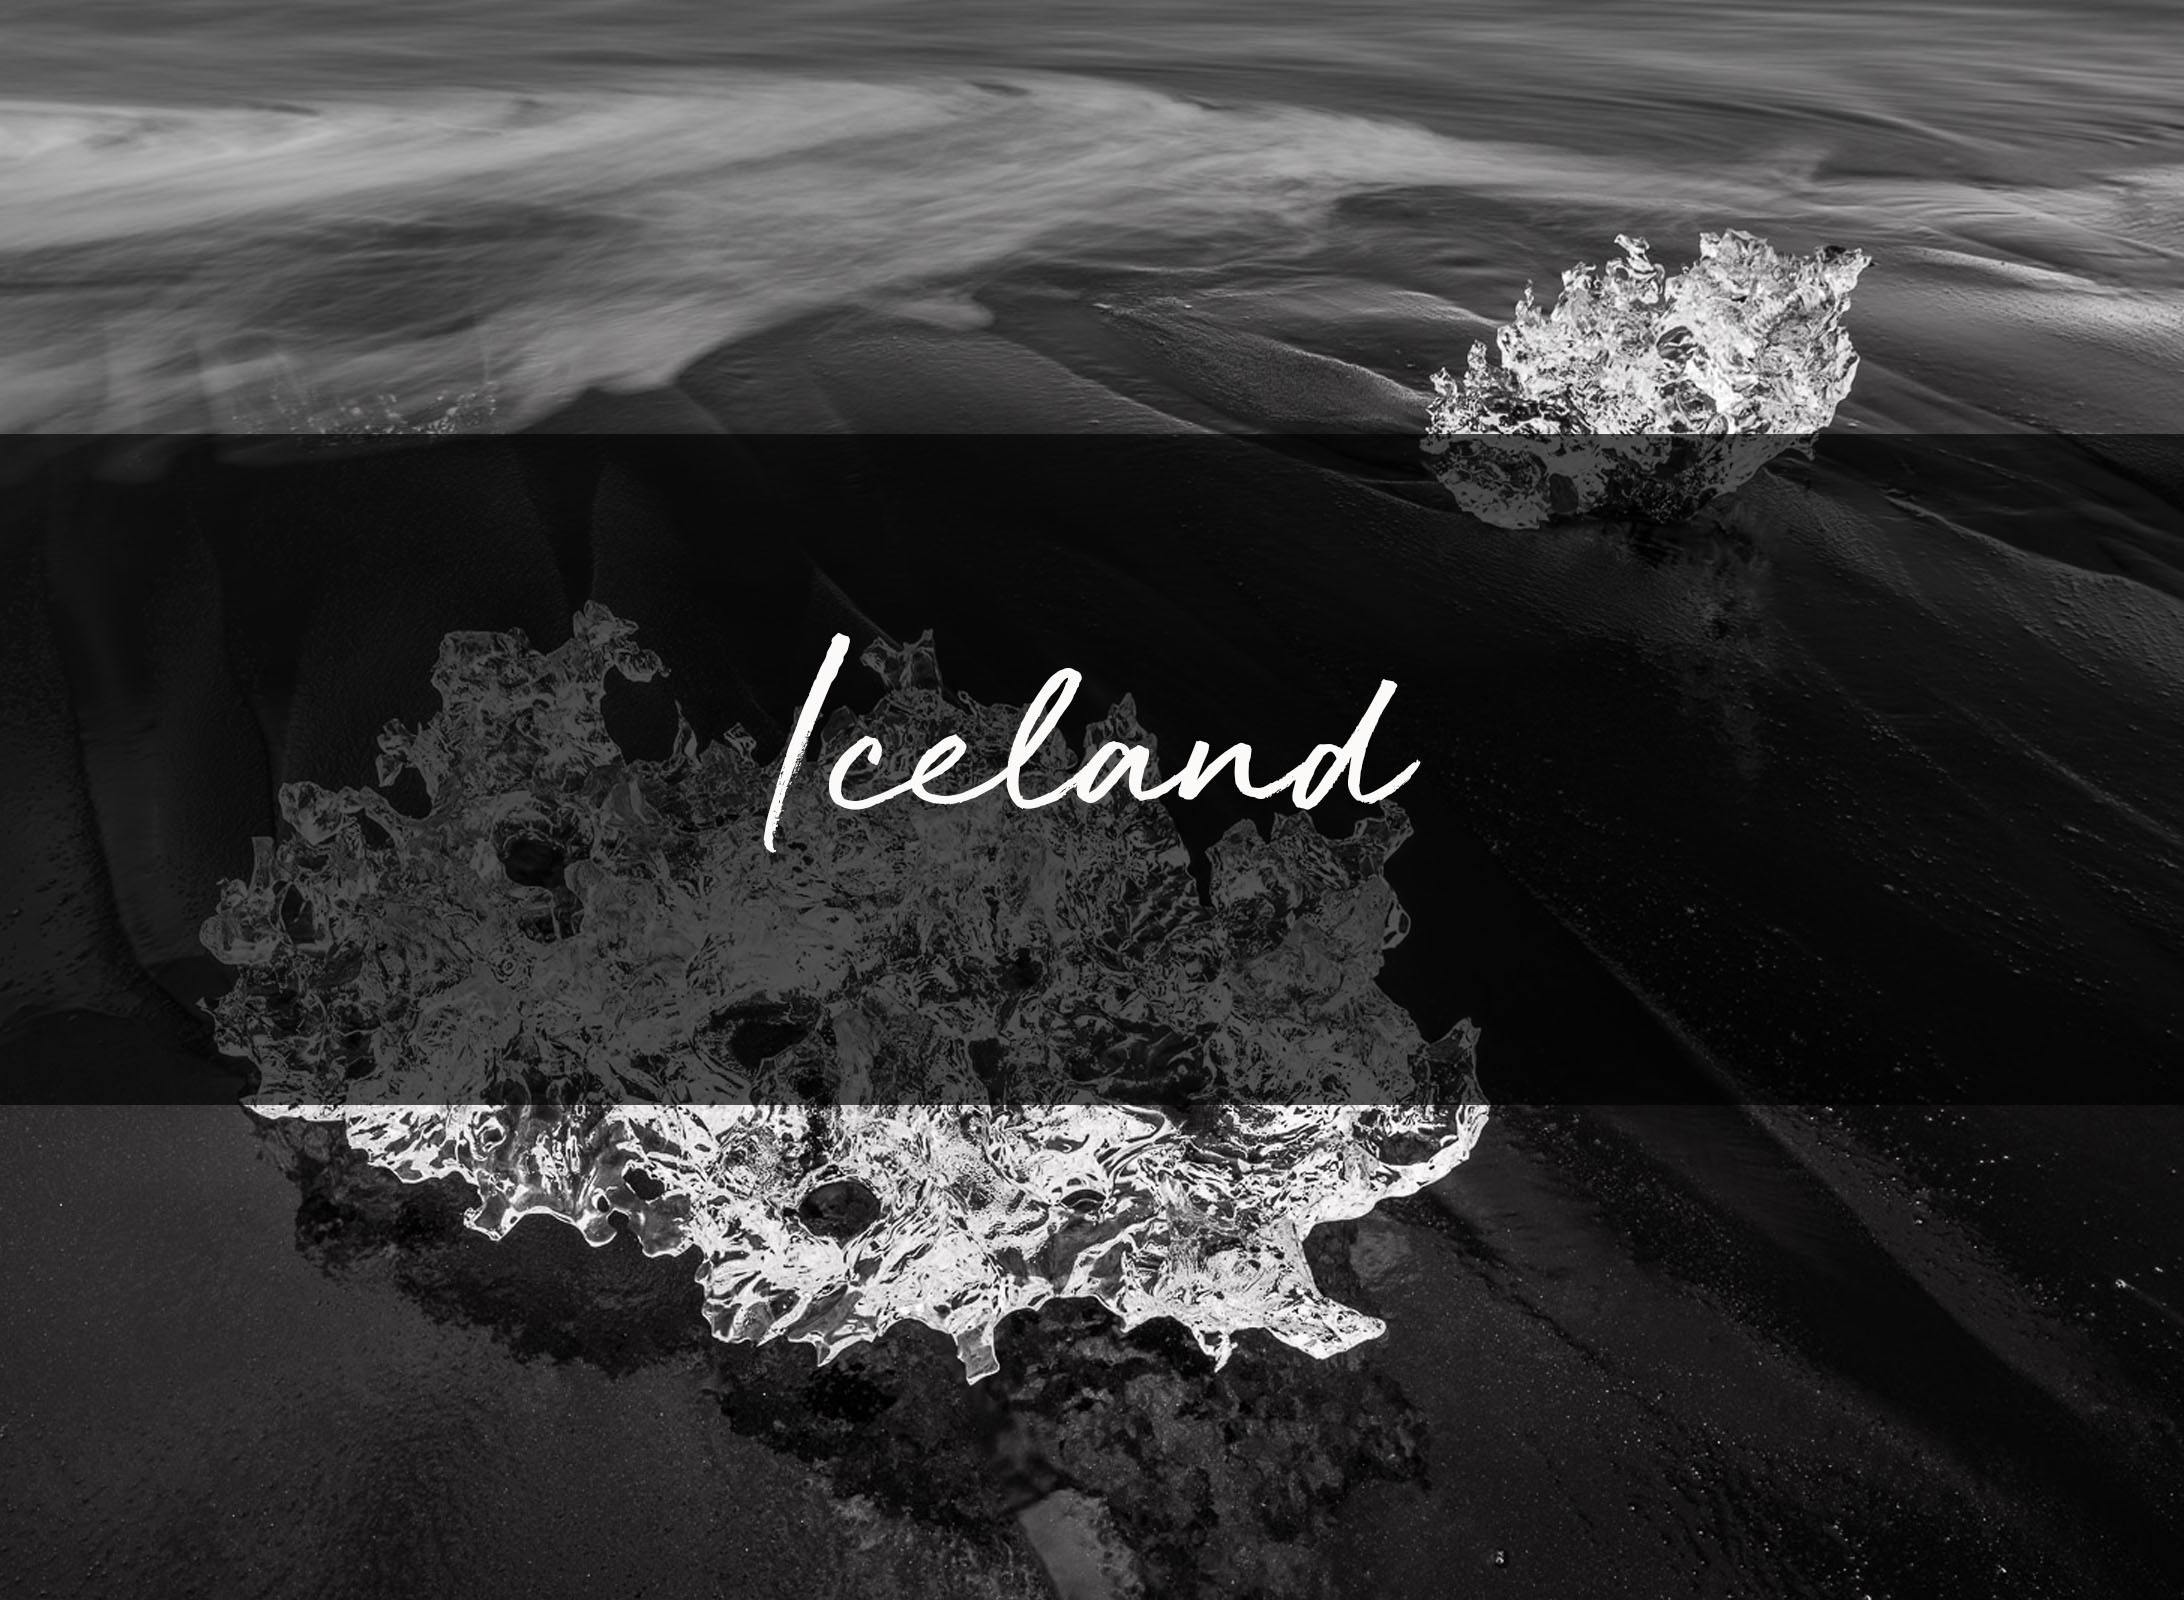 ONLINE PRESENTATION - Iceland-Tom-Putt-Landscape-Prints